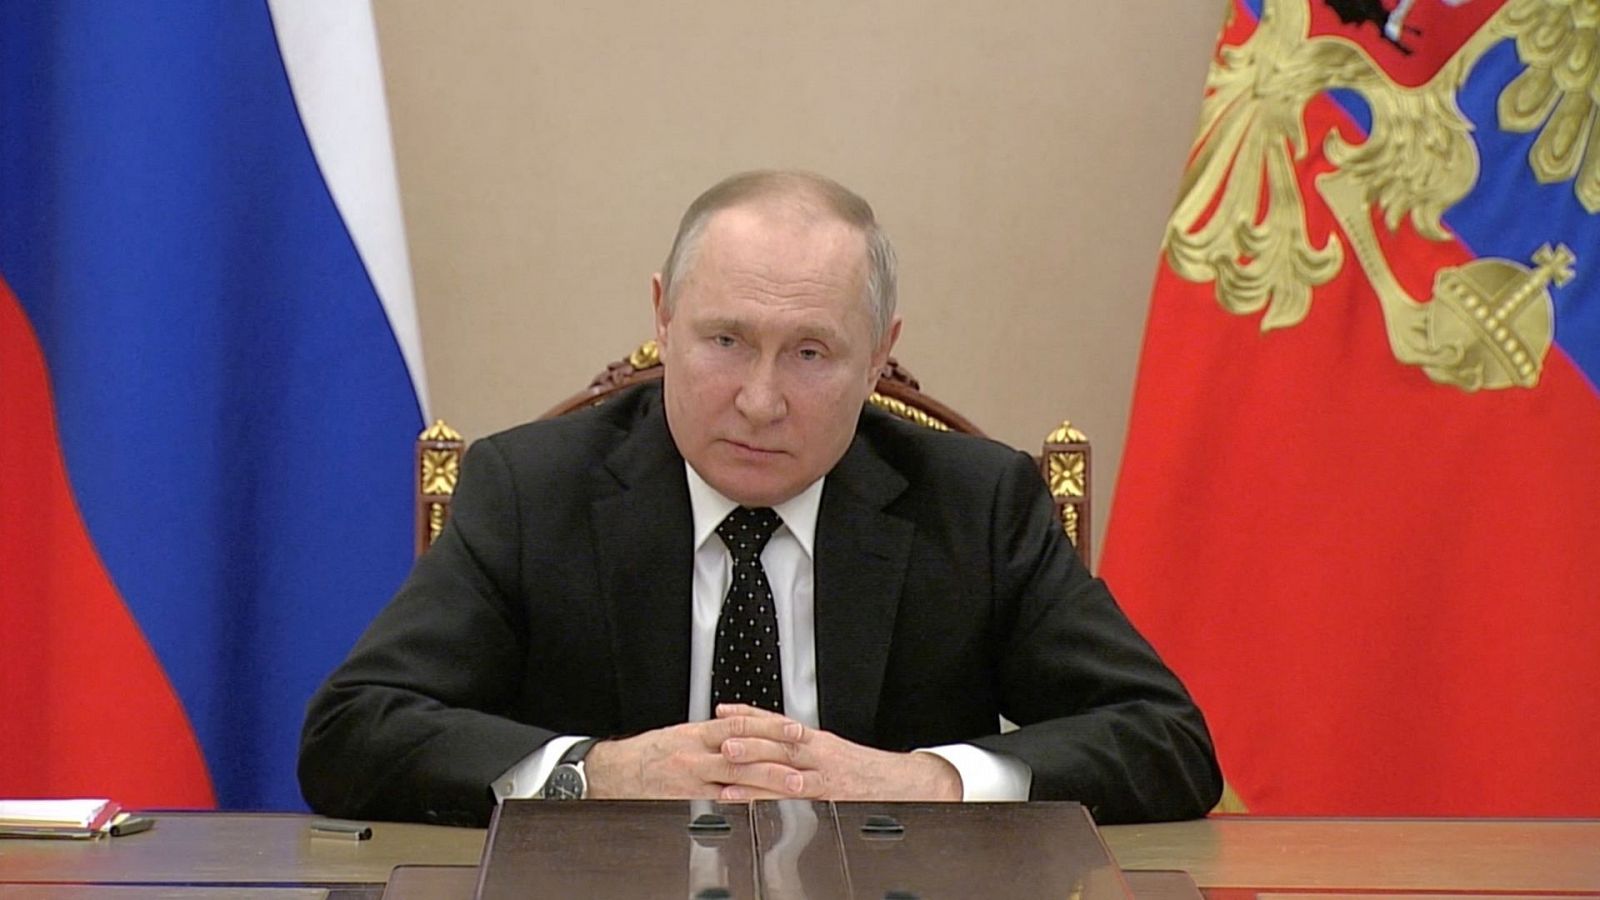 24 horas fin de semana - Putin pone en alerta a las fuerzas de disuasión nuclear por la "retórica agresiva" de Occidente - Escuchar ahora